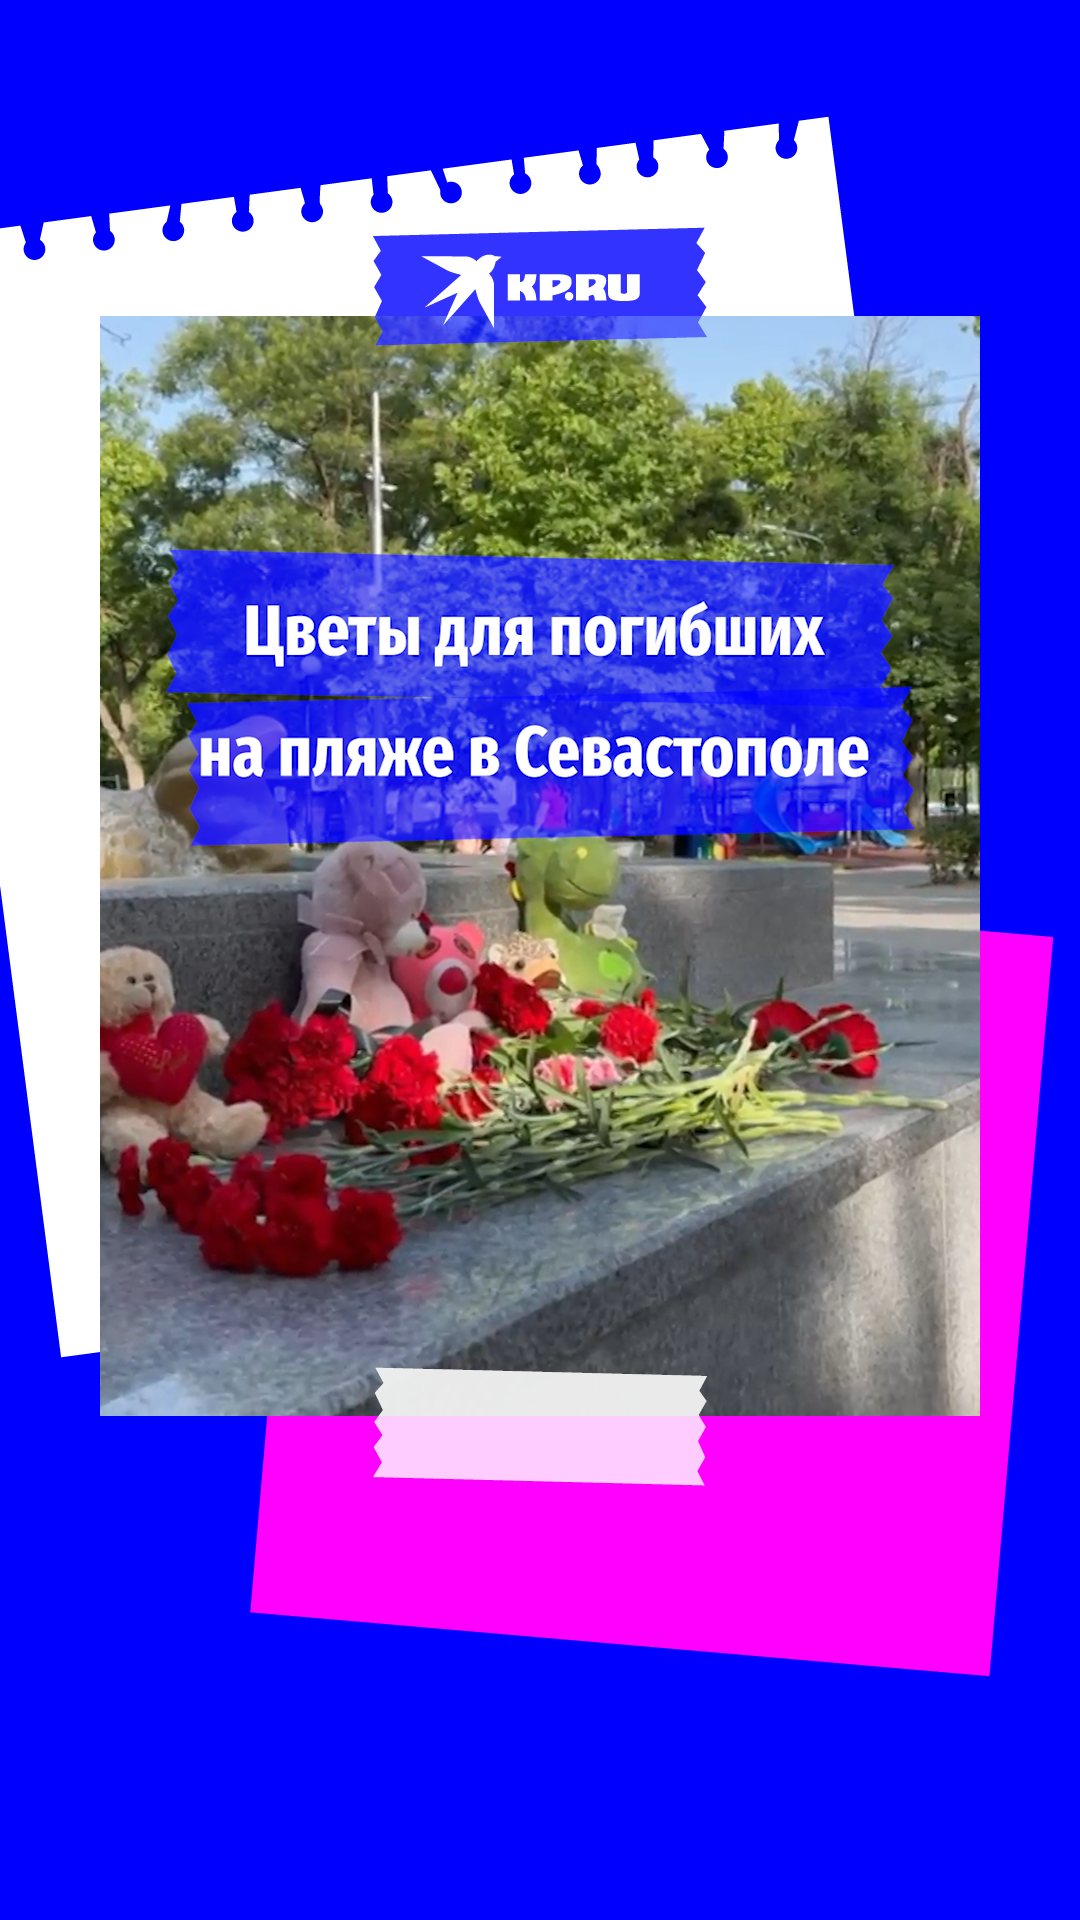 Стихийный мемориал в память о жертвах обстрела появился в Севастополе